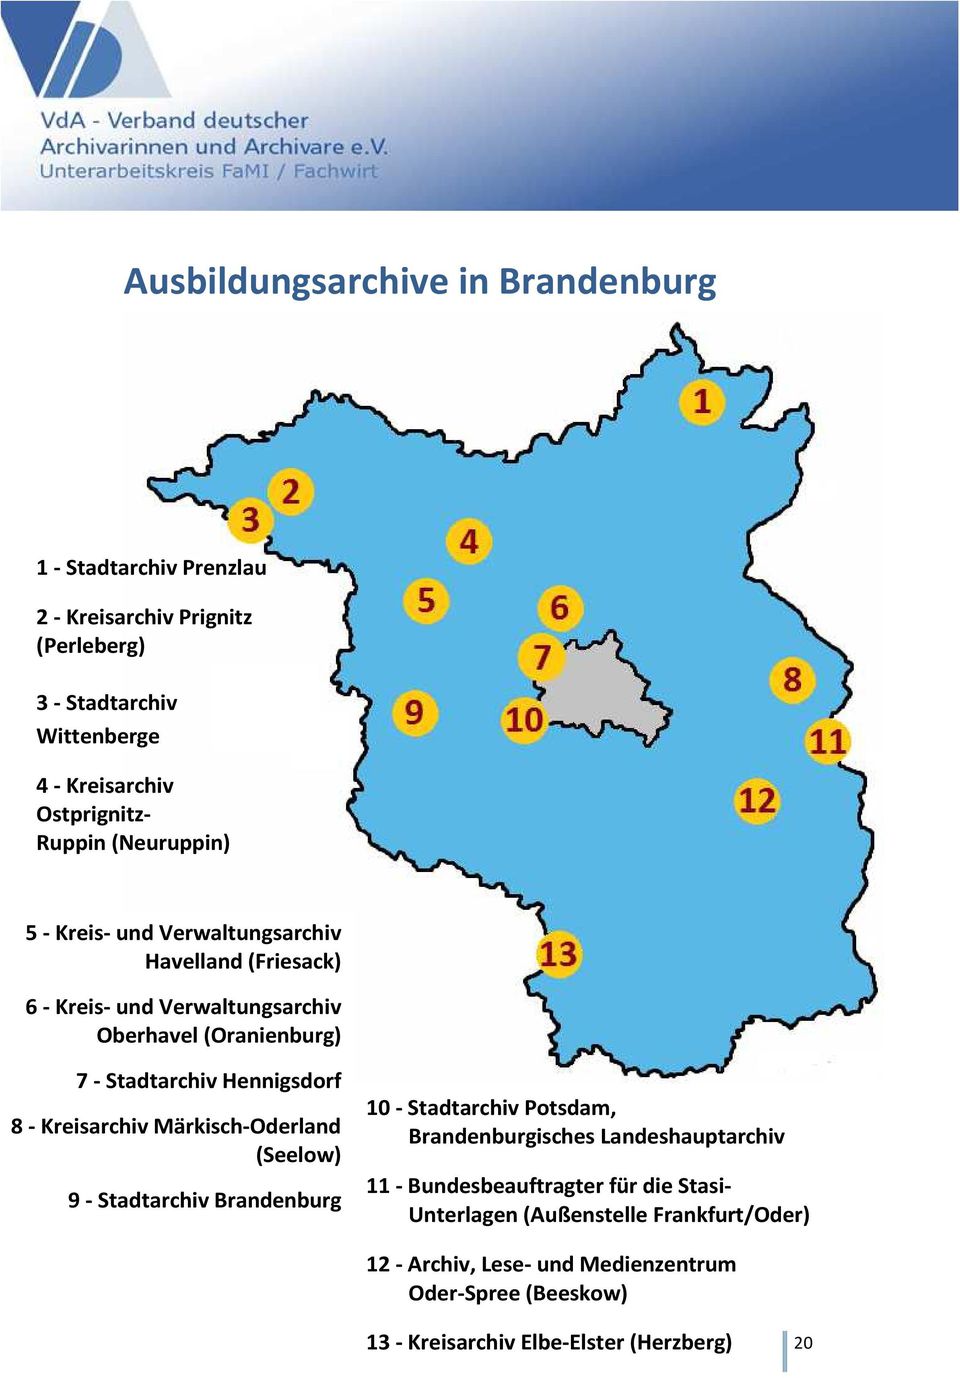 Hennigsdorf 8 - Kreisarchiv Märkisch-Oderland (Seelow) 9 - Stadtarchiv Brandenburg 10 - Stadtarchiv Potsdam, Brandenburgisches Landeshauptarchiv 11 -